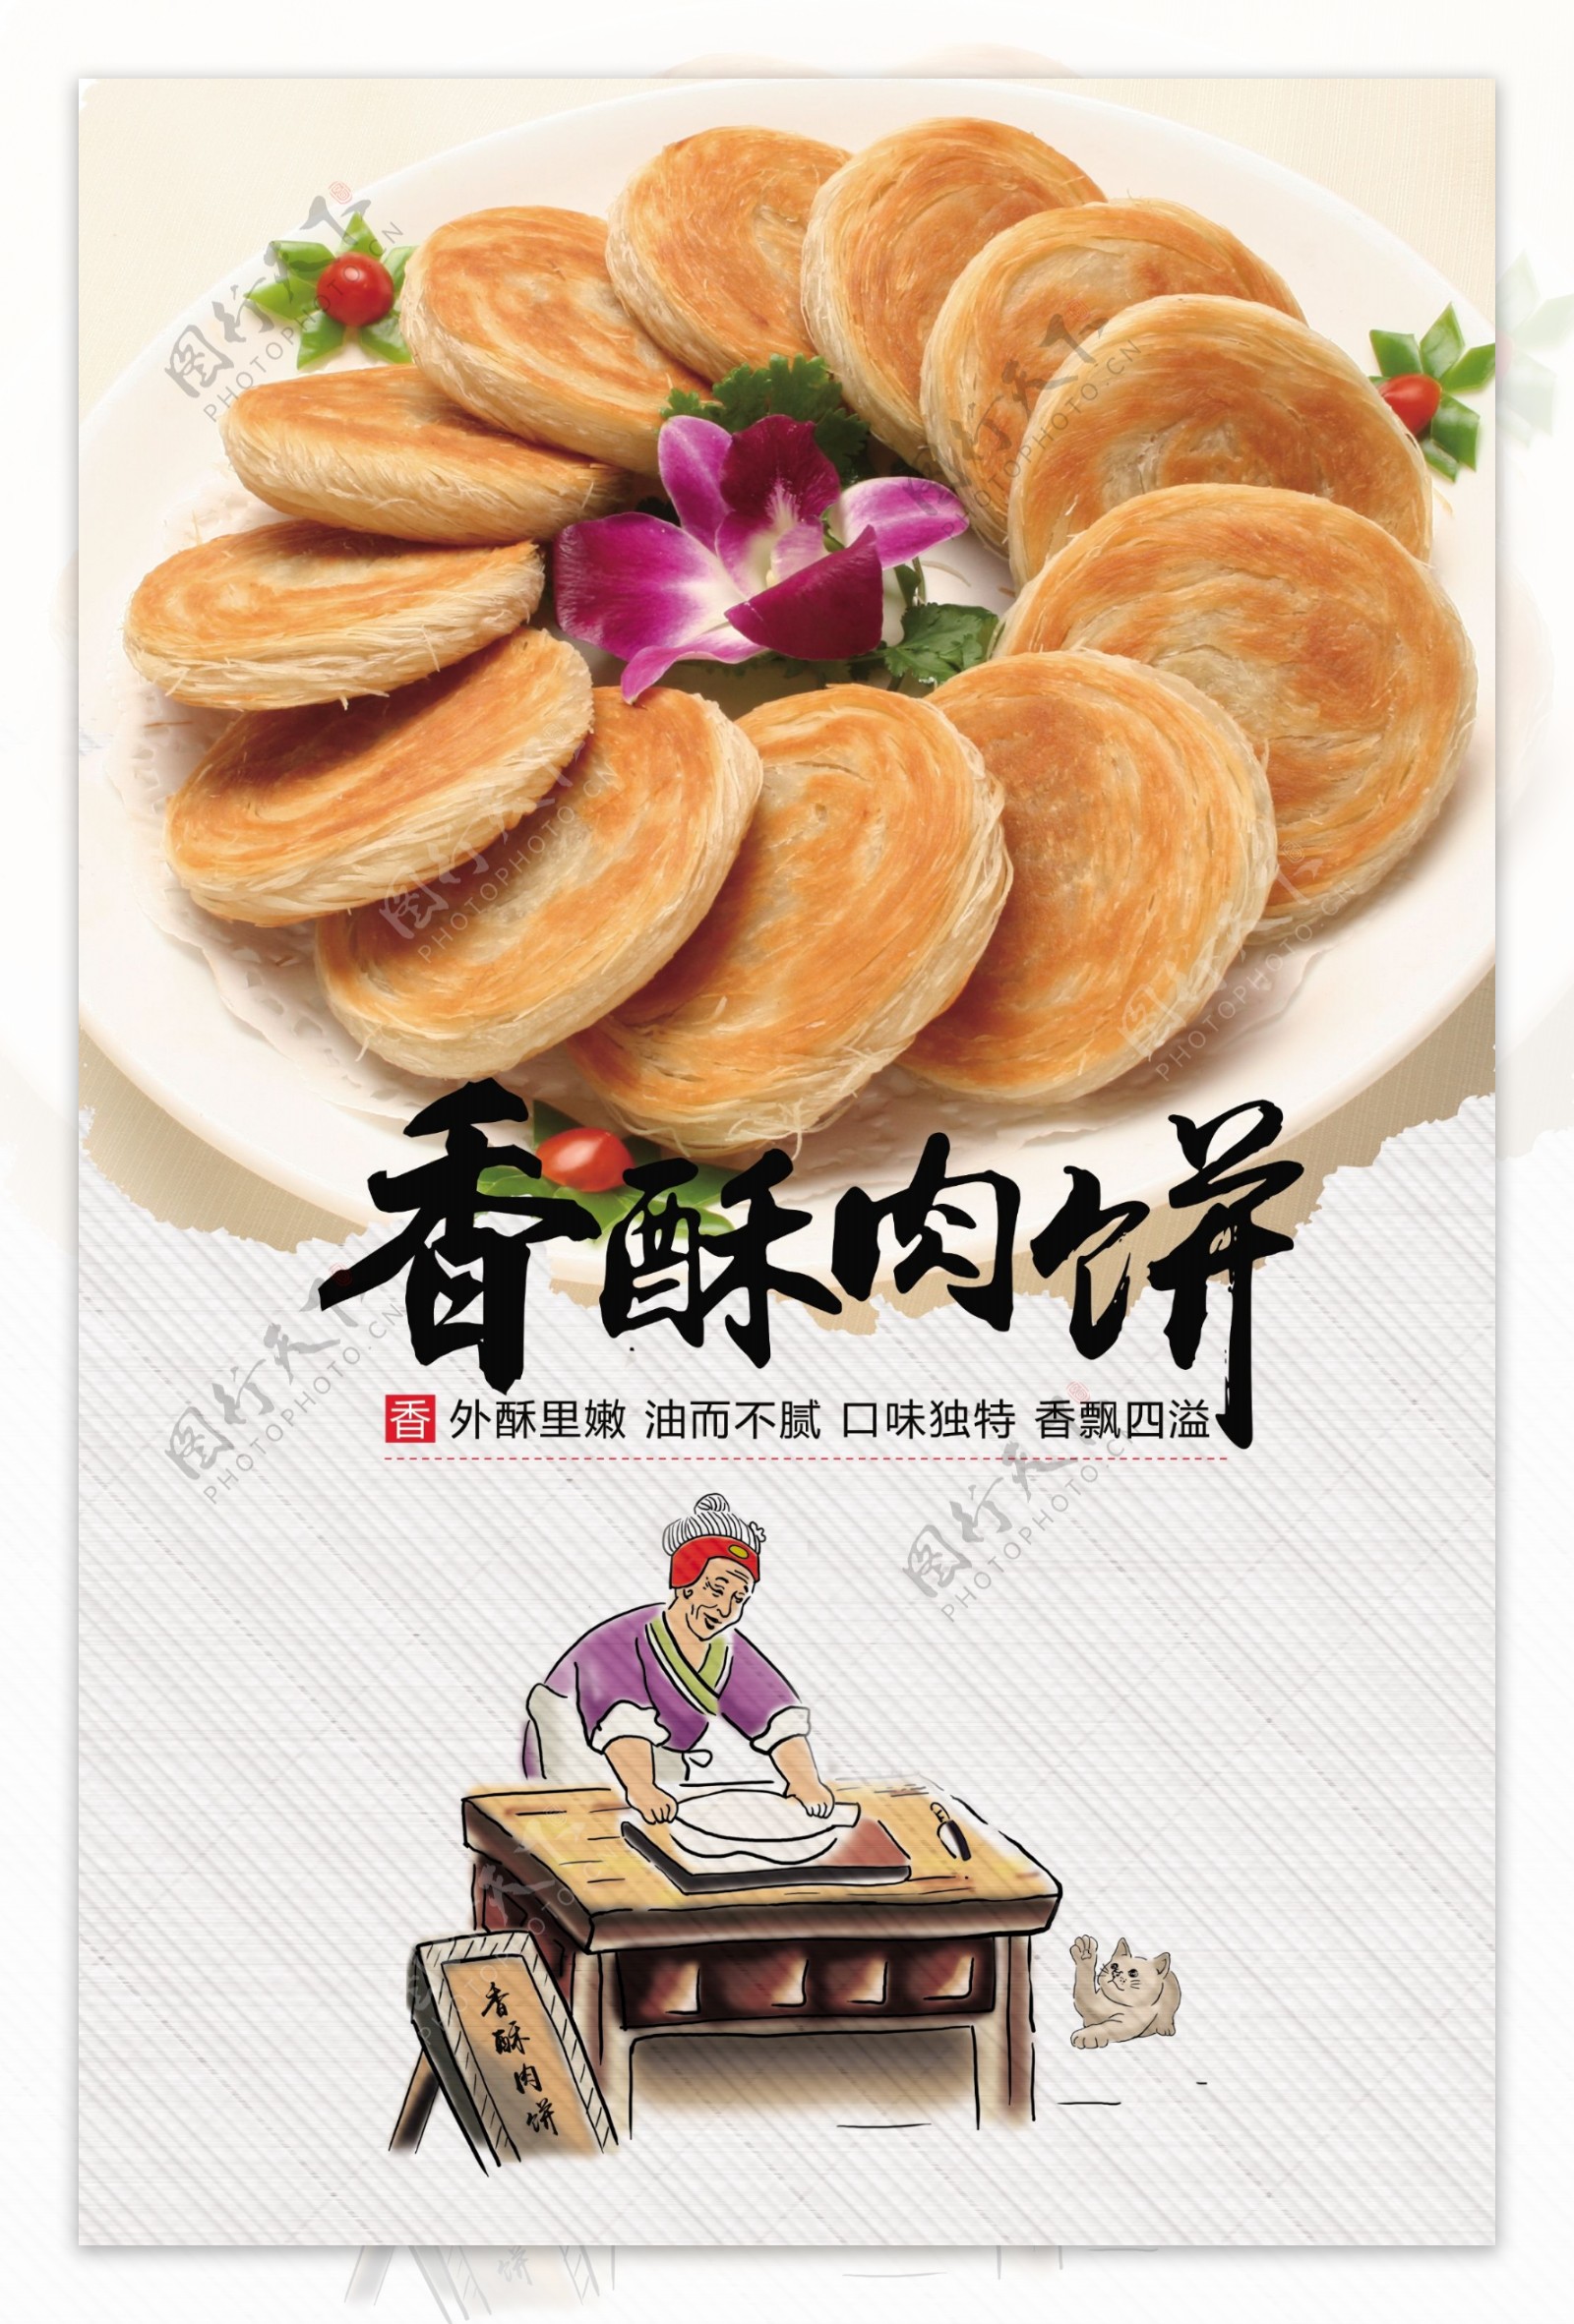 香酥肉饼美食宣传海报